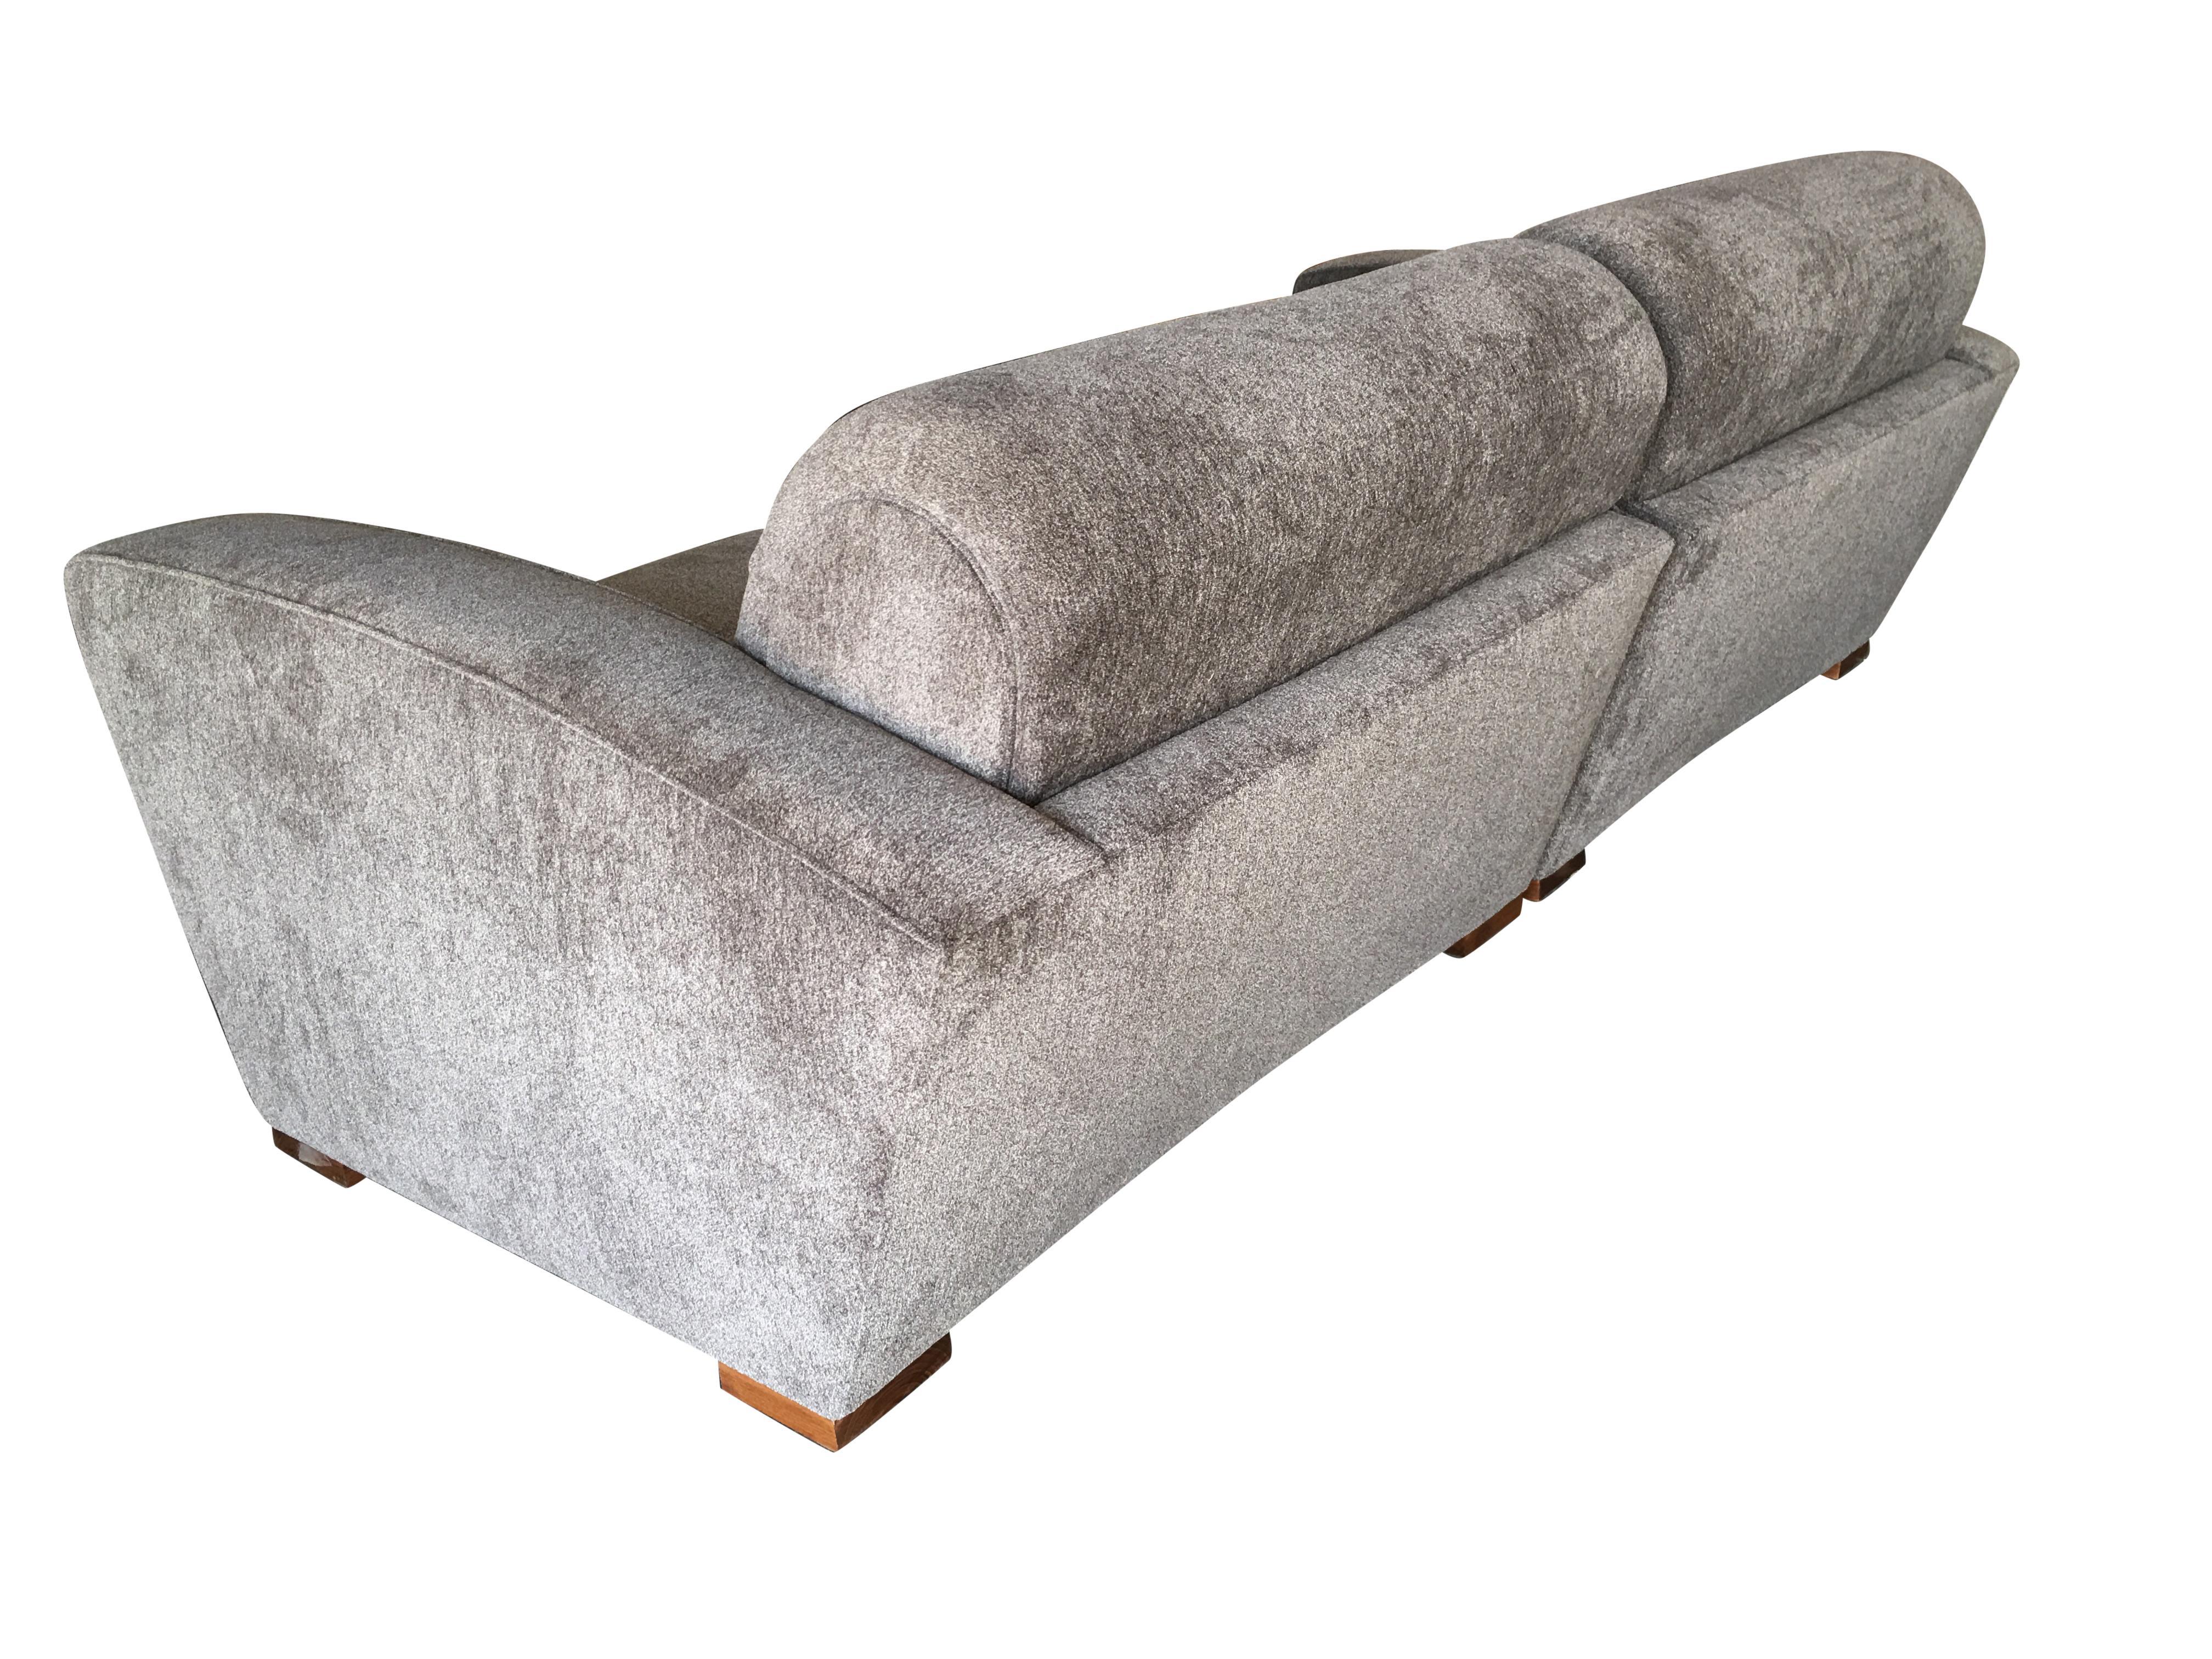 Original Art-Deco-Sofa, entworfen von Paul Frankl. Das Sofa ist in zwei Abschnitte, die zusammen kommen, um eine sehr große Liebe Sitz, der leicht passt 3 Personen, wenn nötig. Frisch neu gepolstert.

Abmessungen: 86